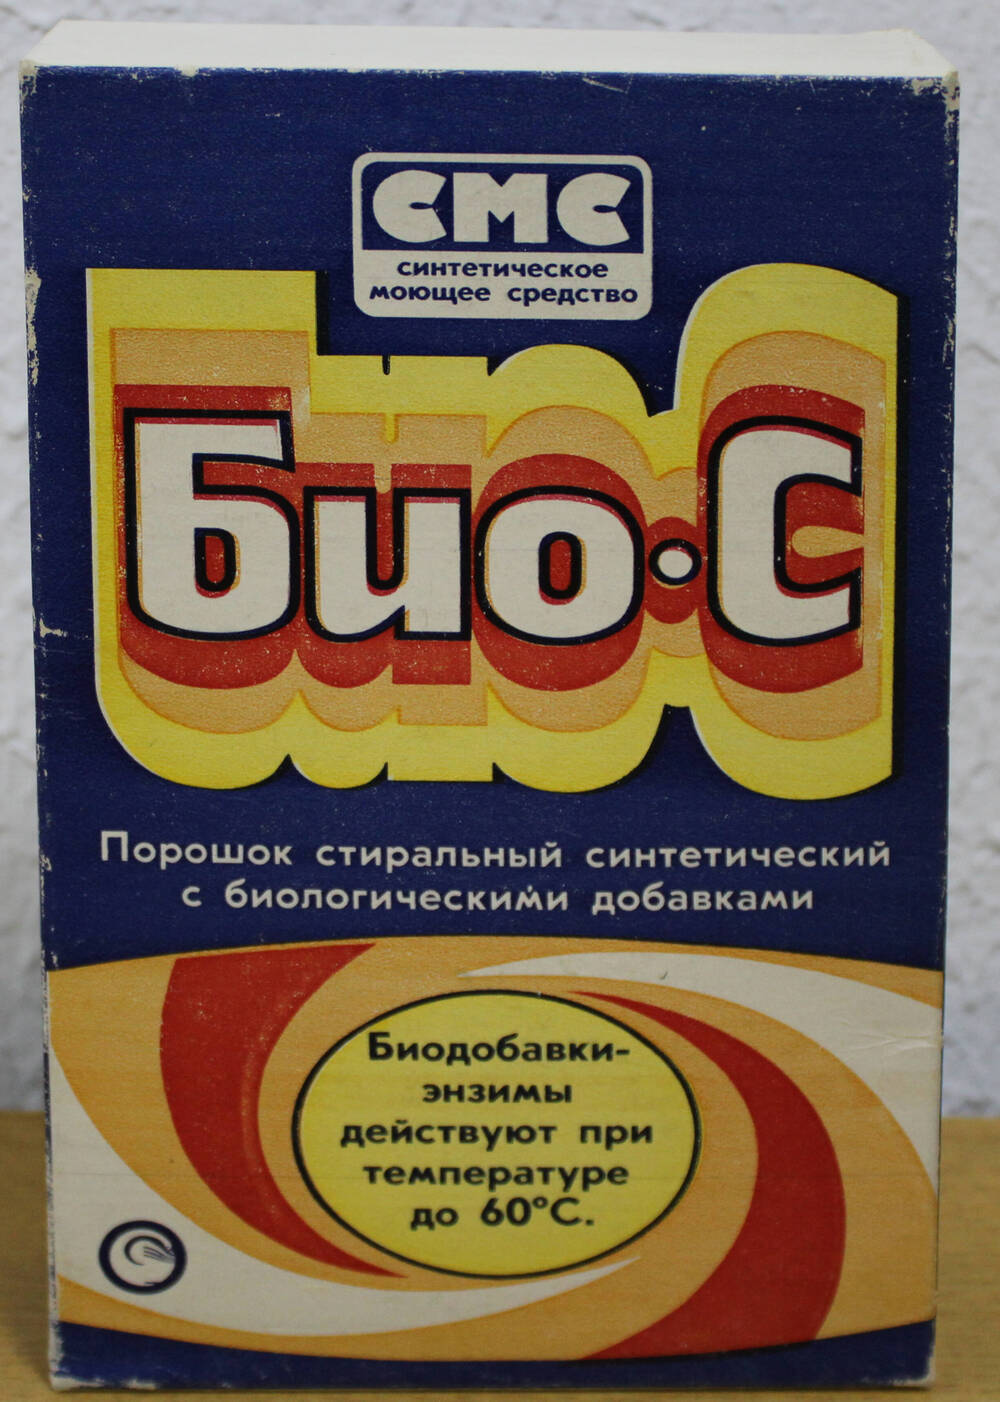 Упаковка синтетического моющего средства Био-С. Продукция Шебекинского химзавода.